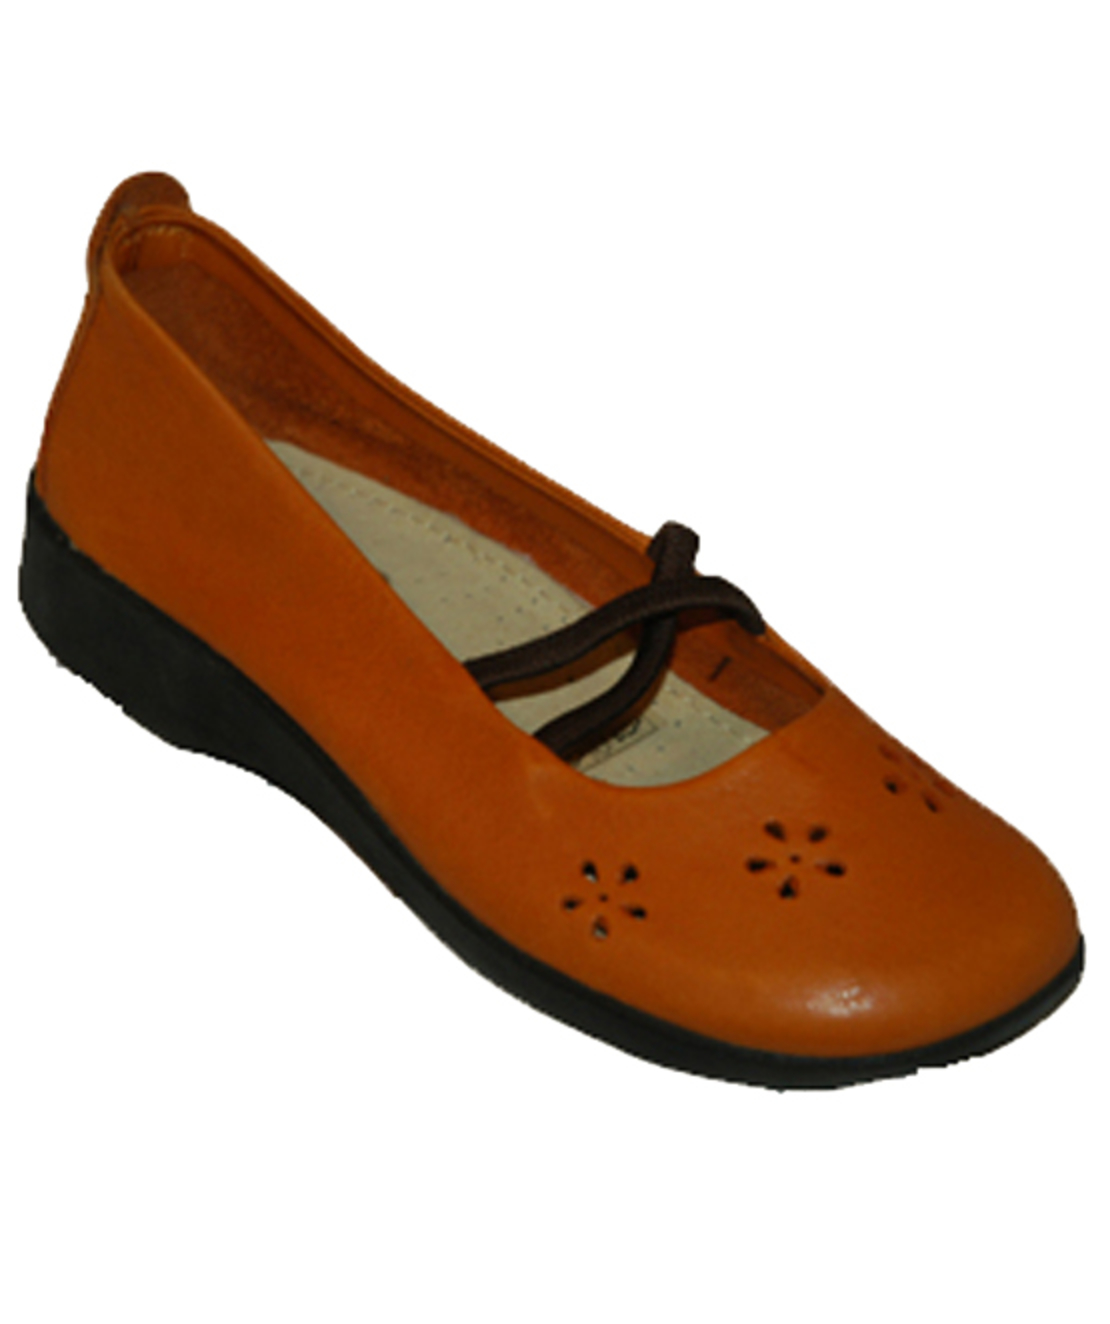 ארקופדיקו - 5601 - נעלי נשים